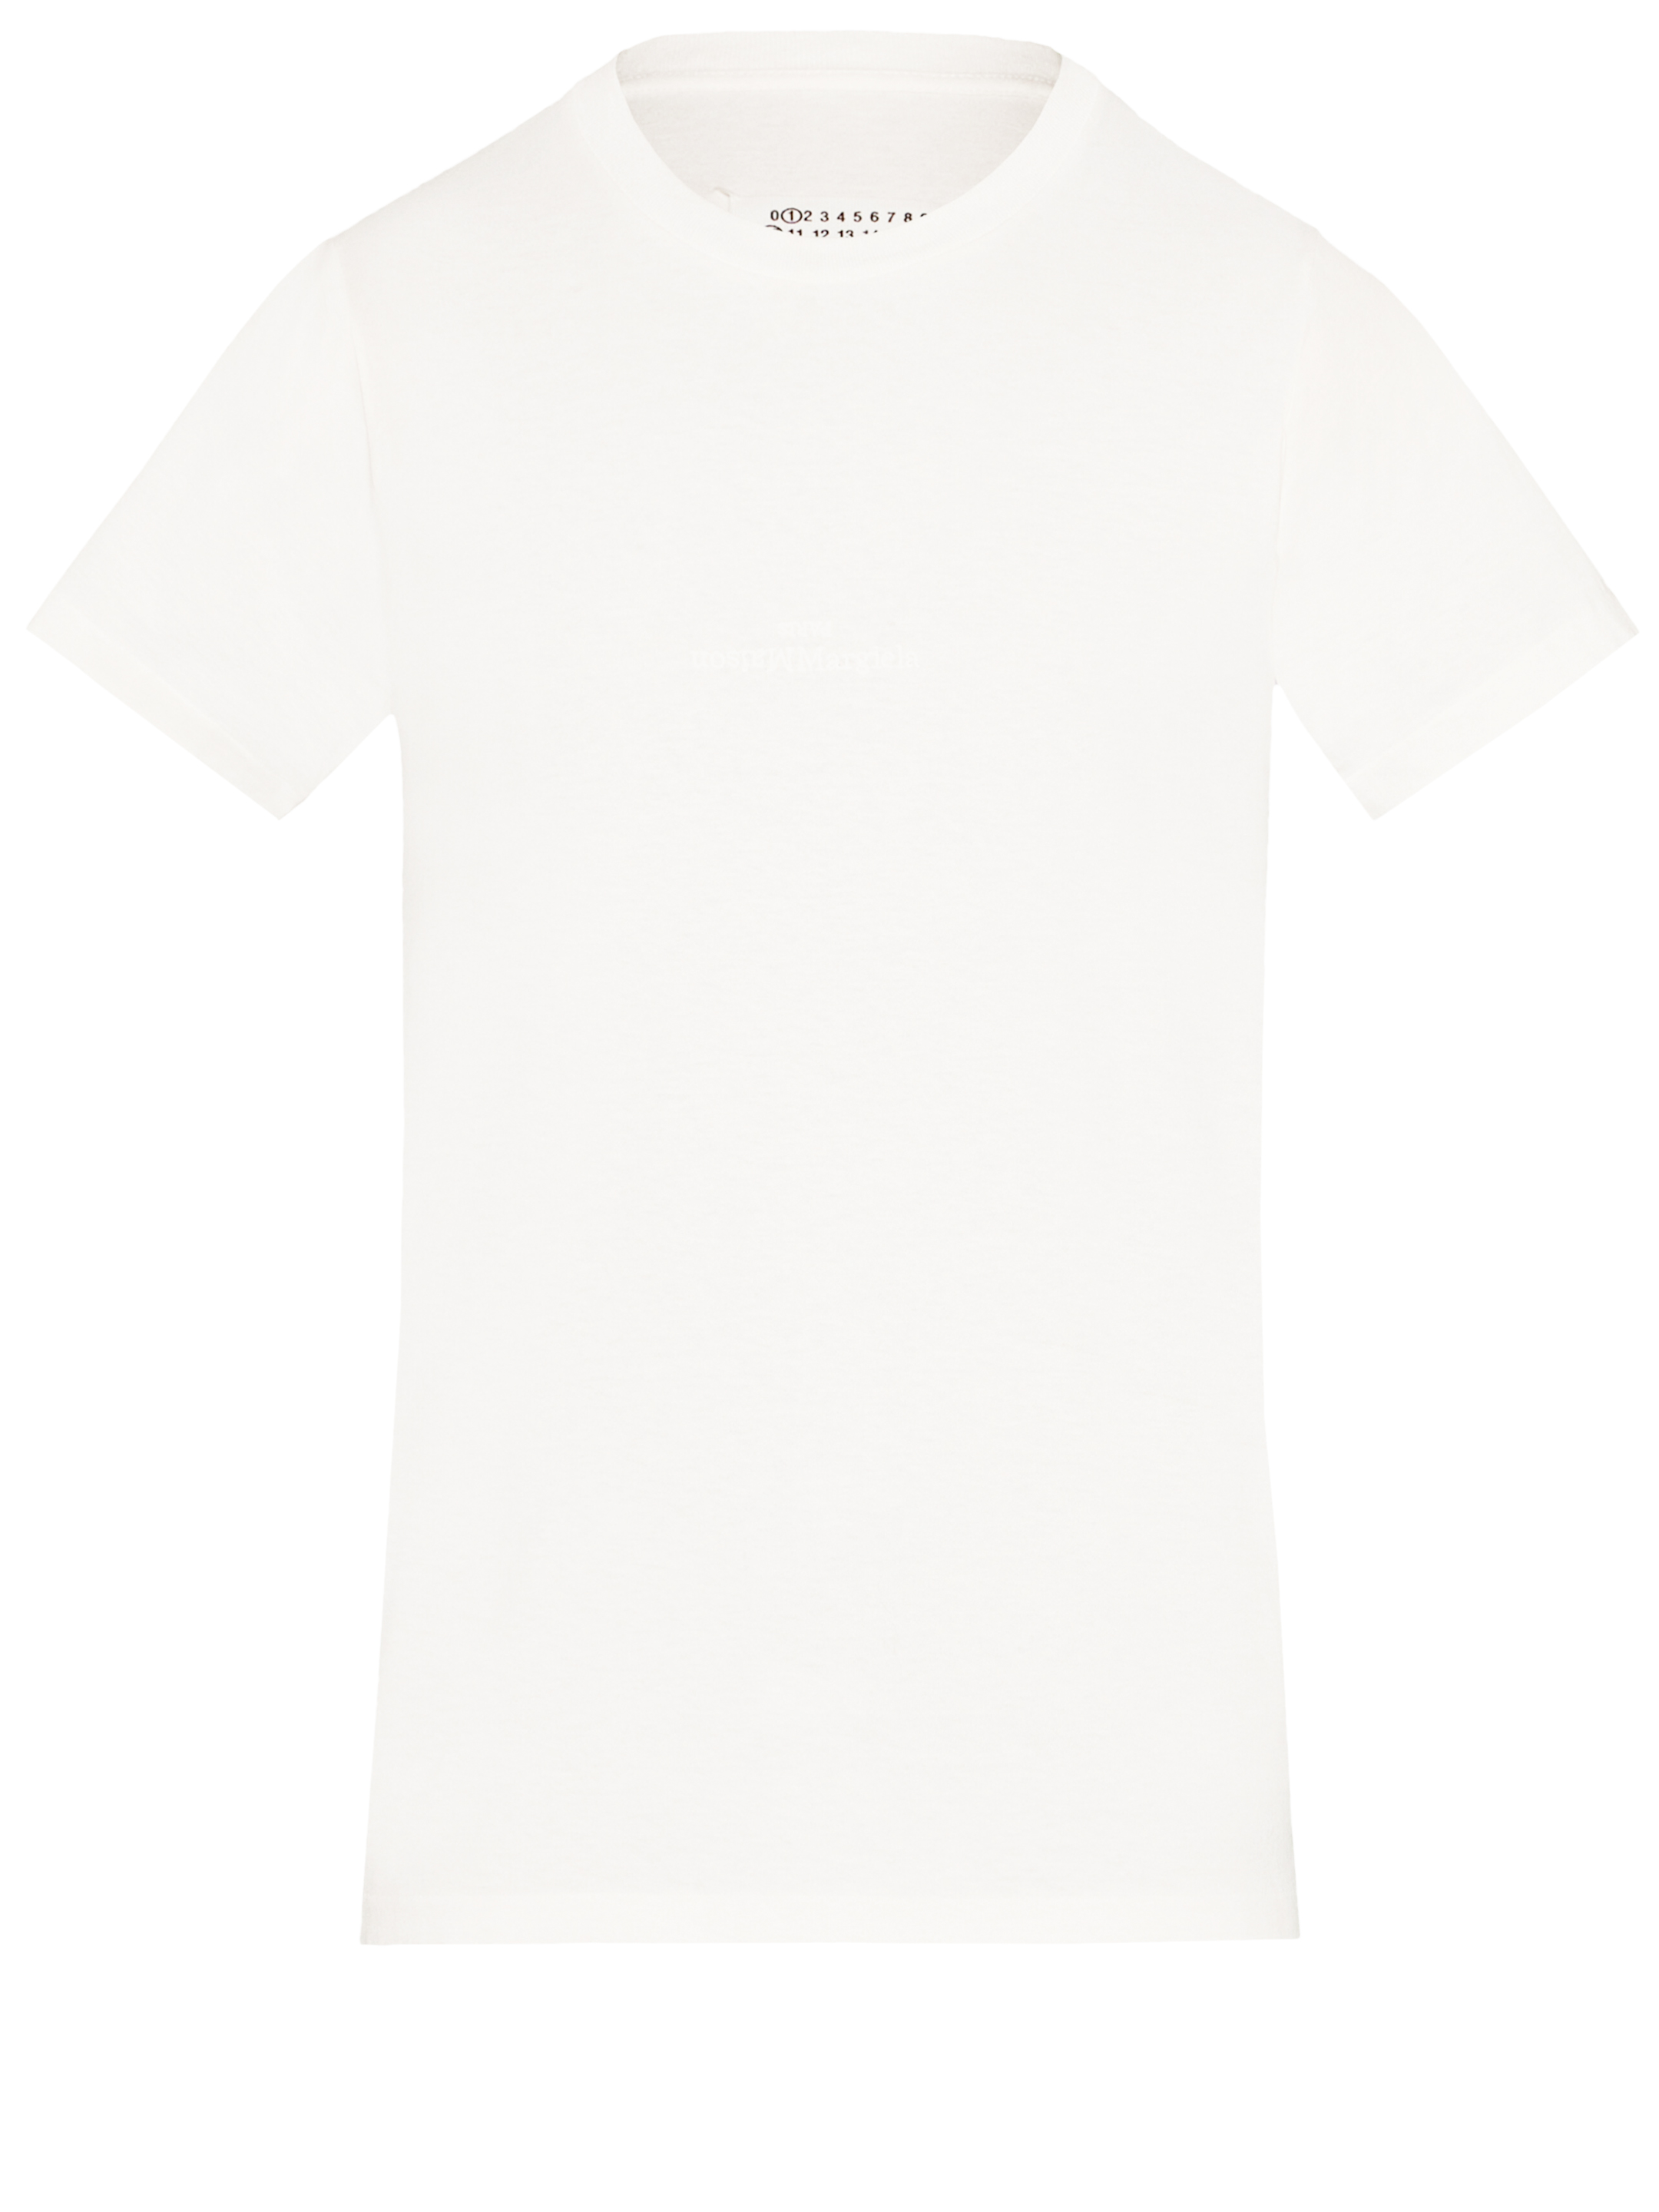 Футболка Maison Margiela Reverse logo, белый футболка из хлопкового джерси с короткими рукавами и вышитым логотипом fred perry серый